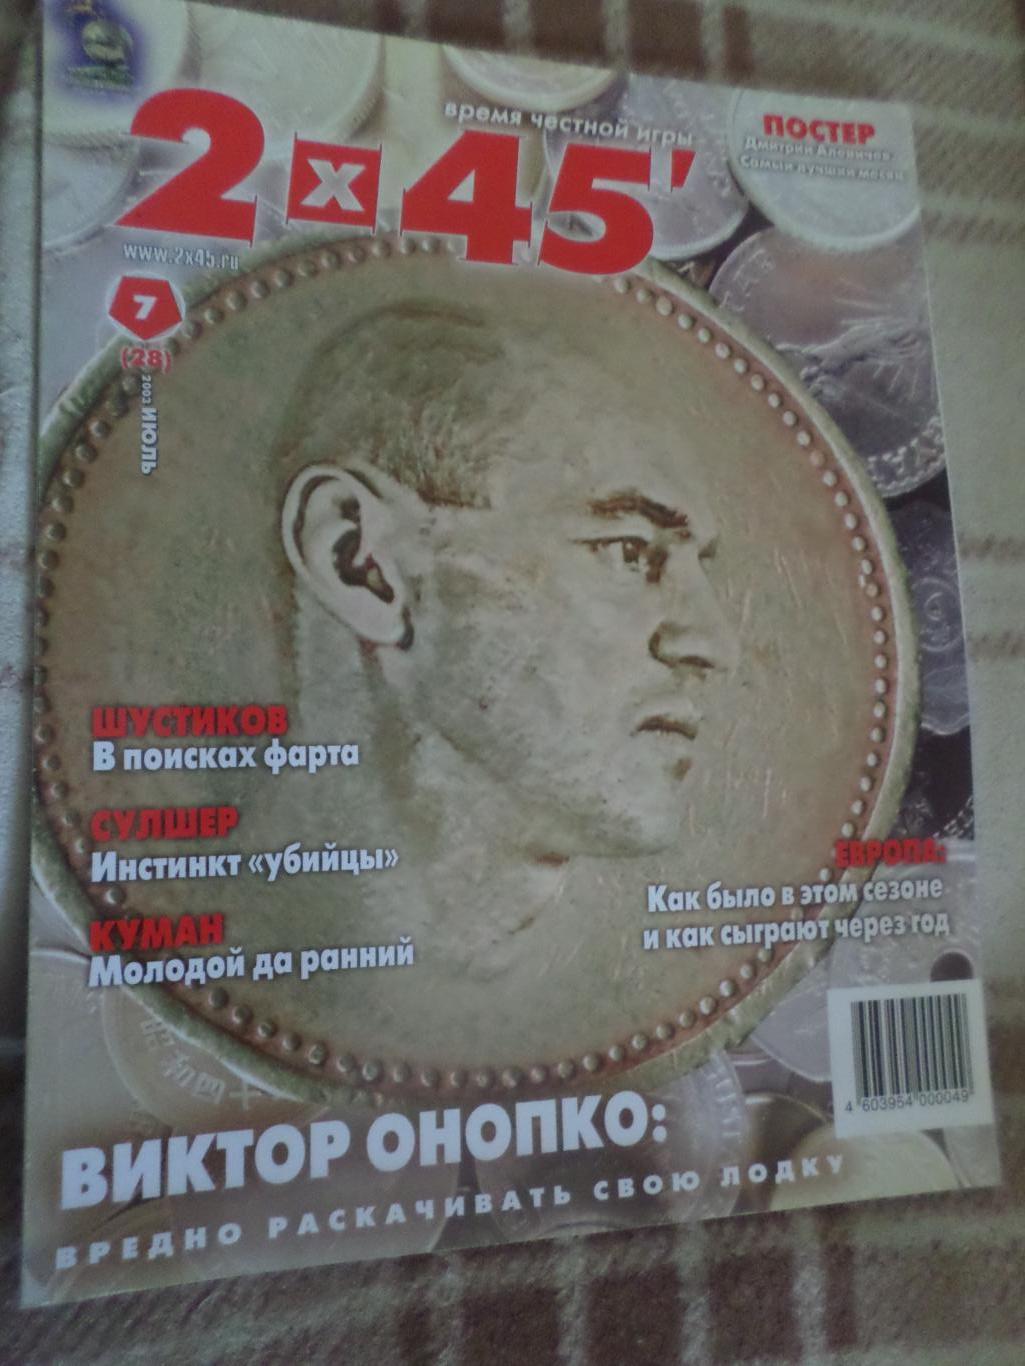 журнал Футбол 2 х 45 № 7 2003 г